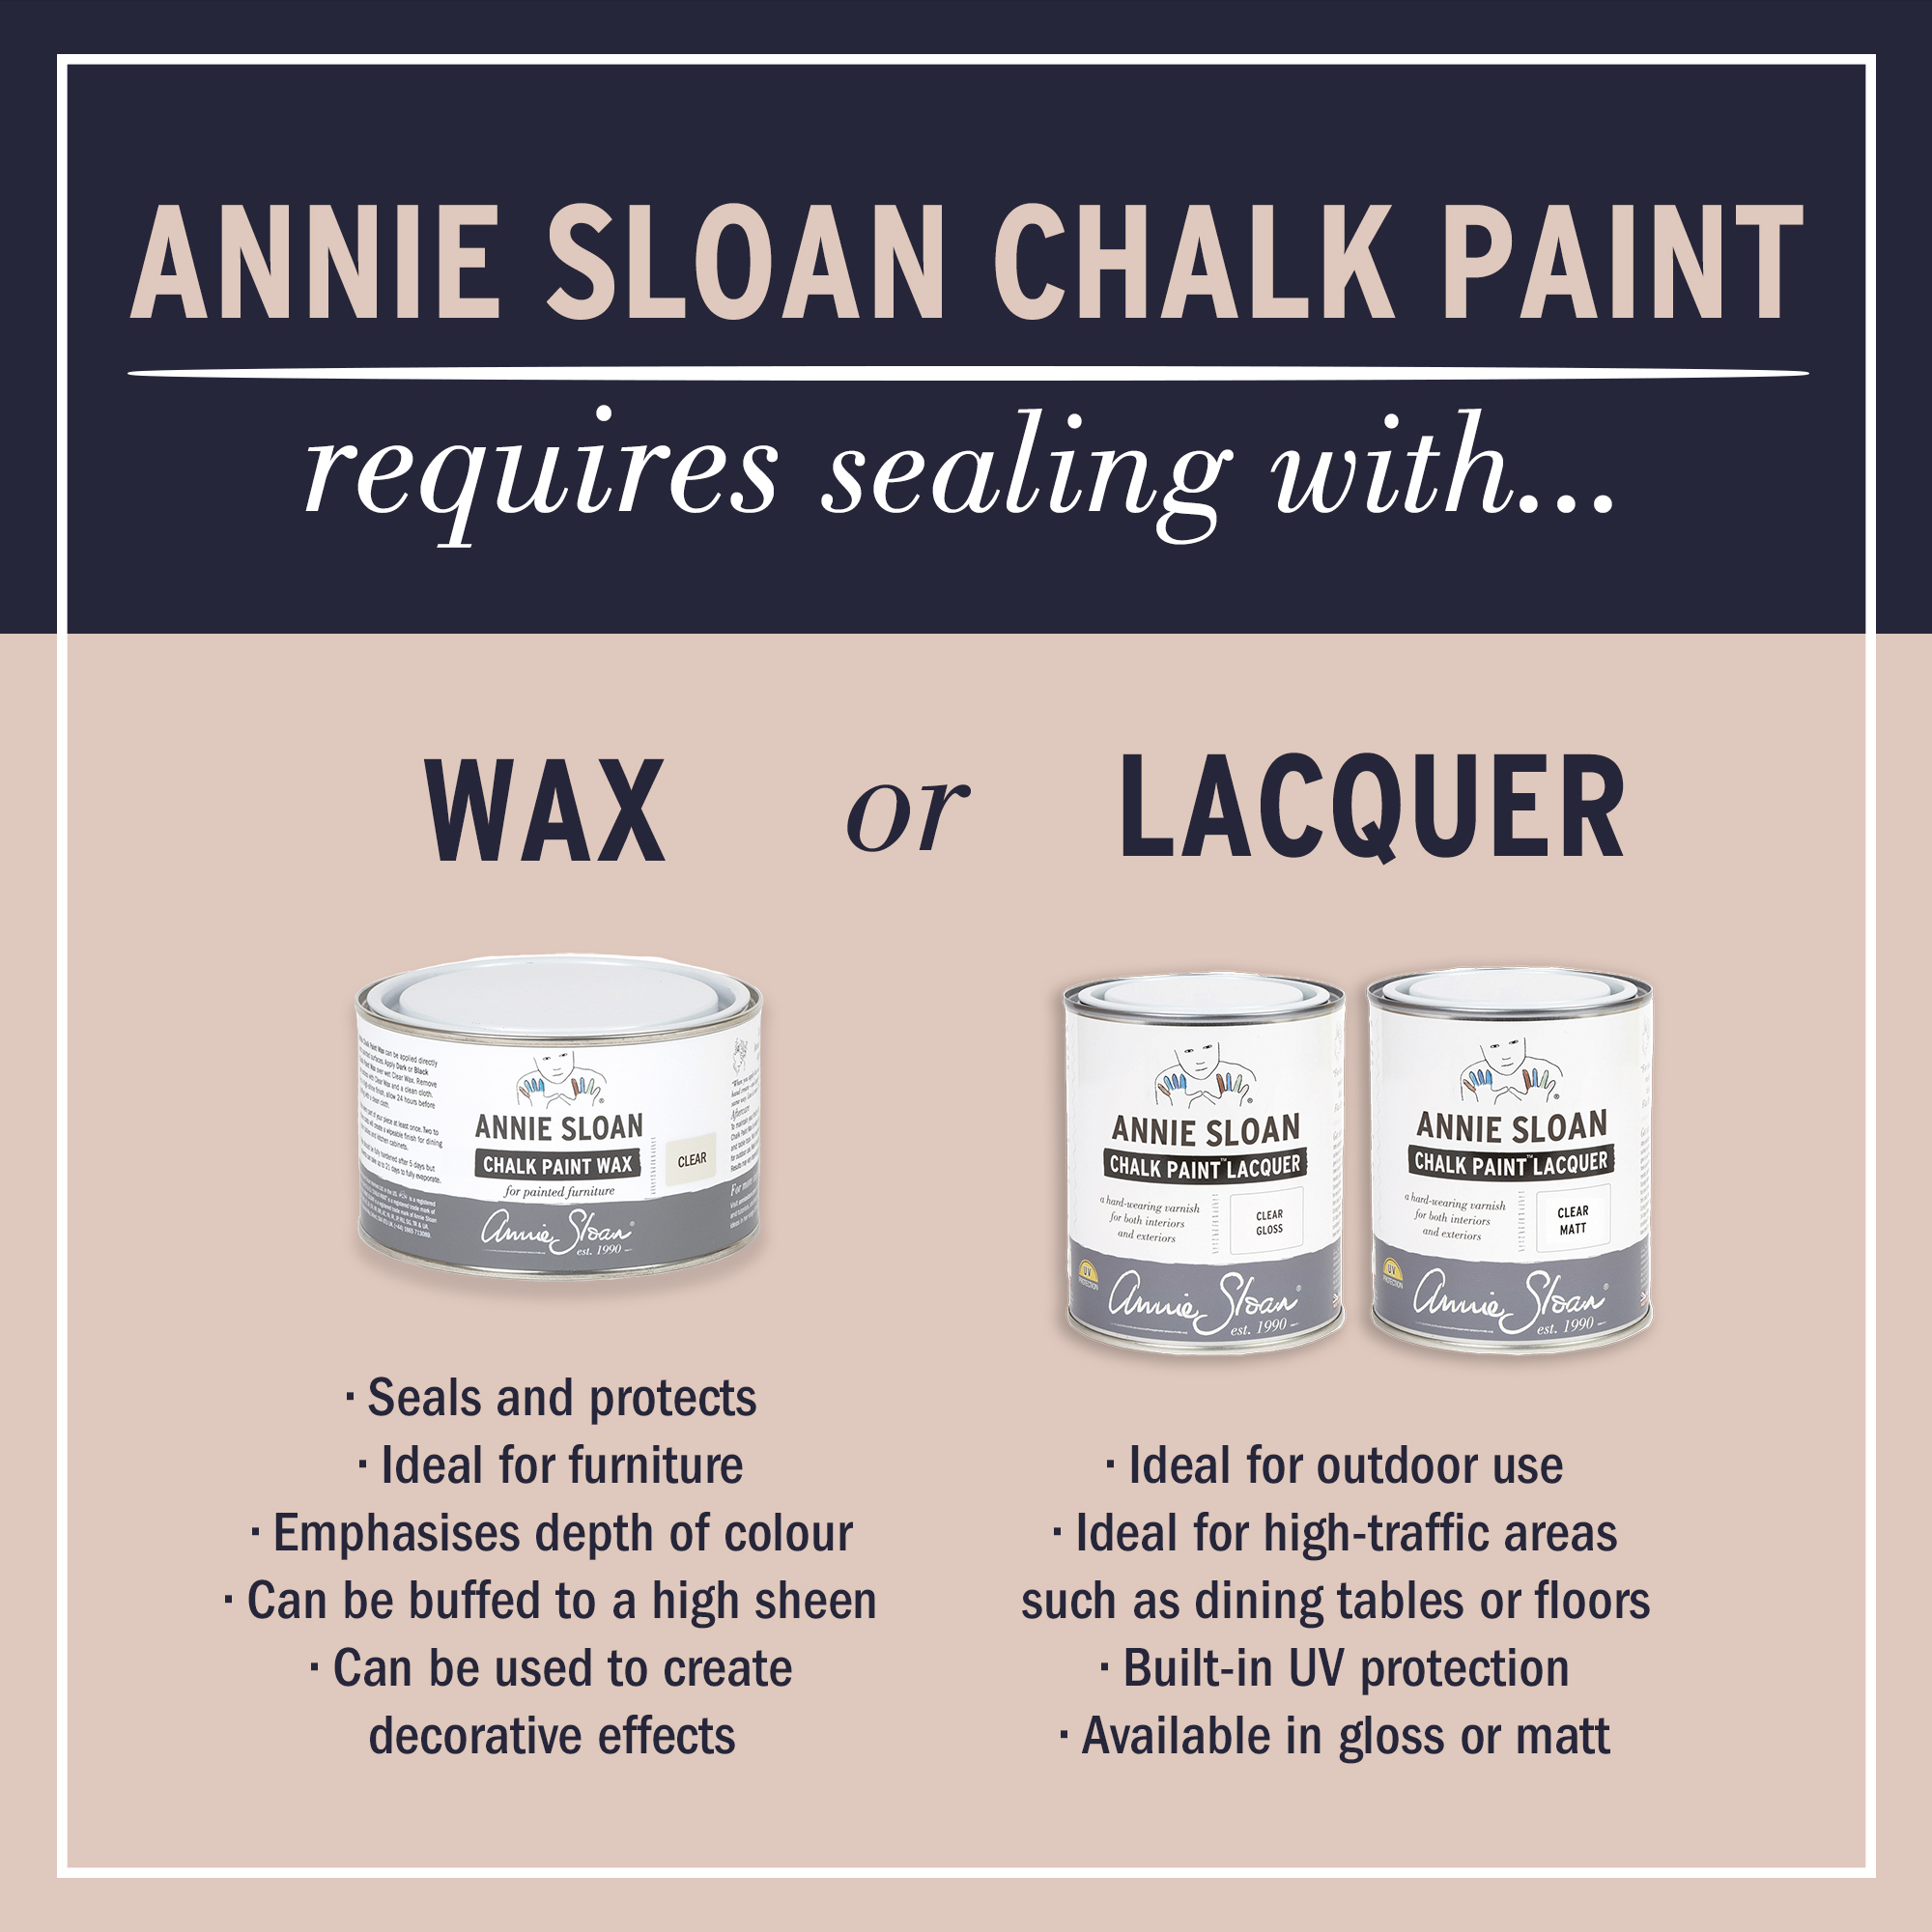 wax or lacquer sealing description